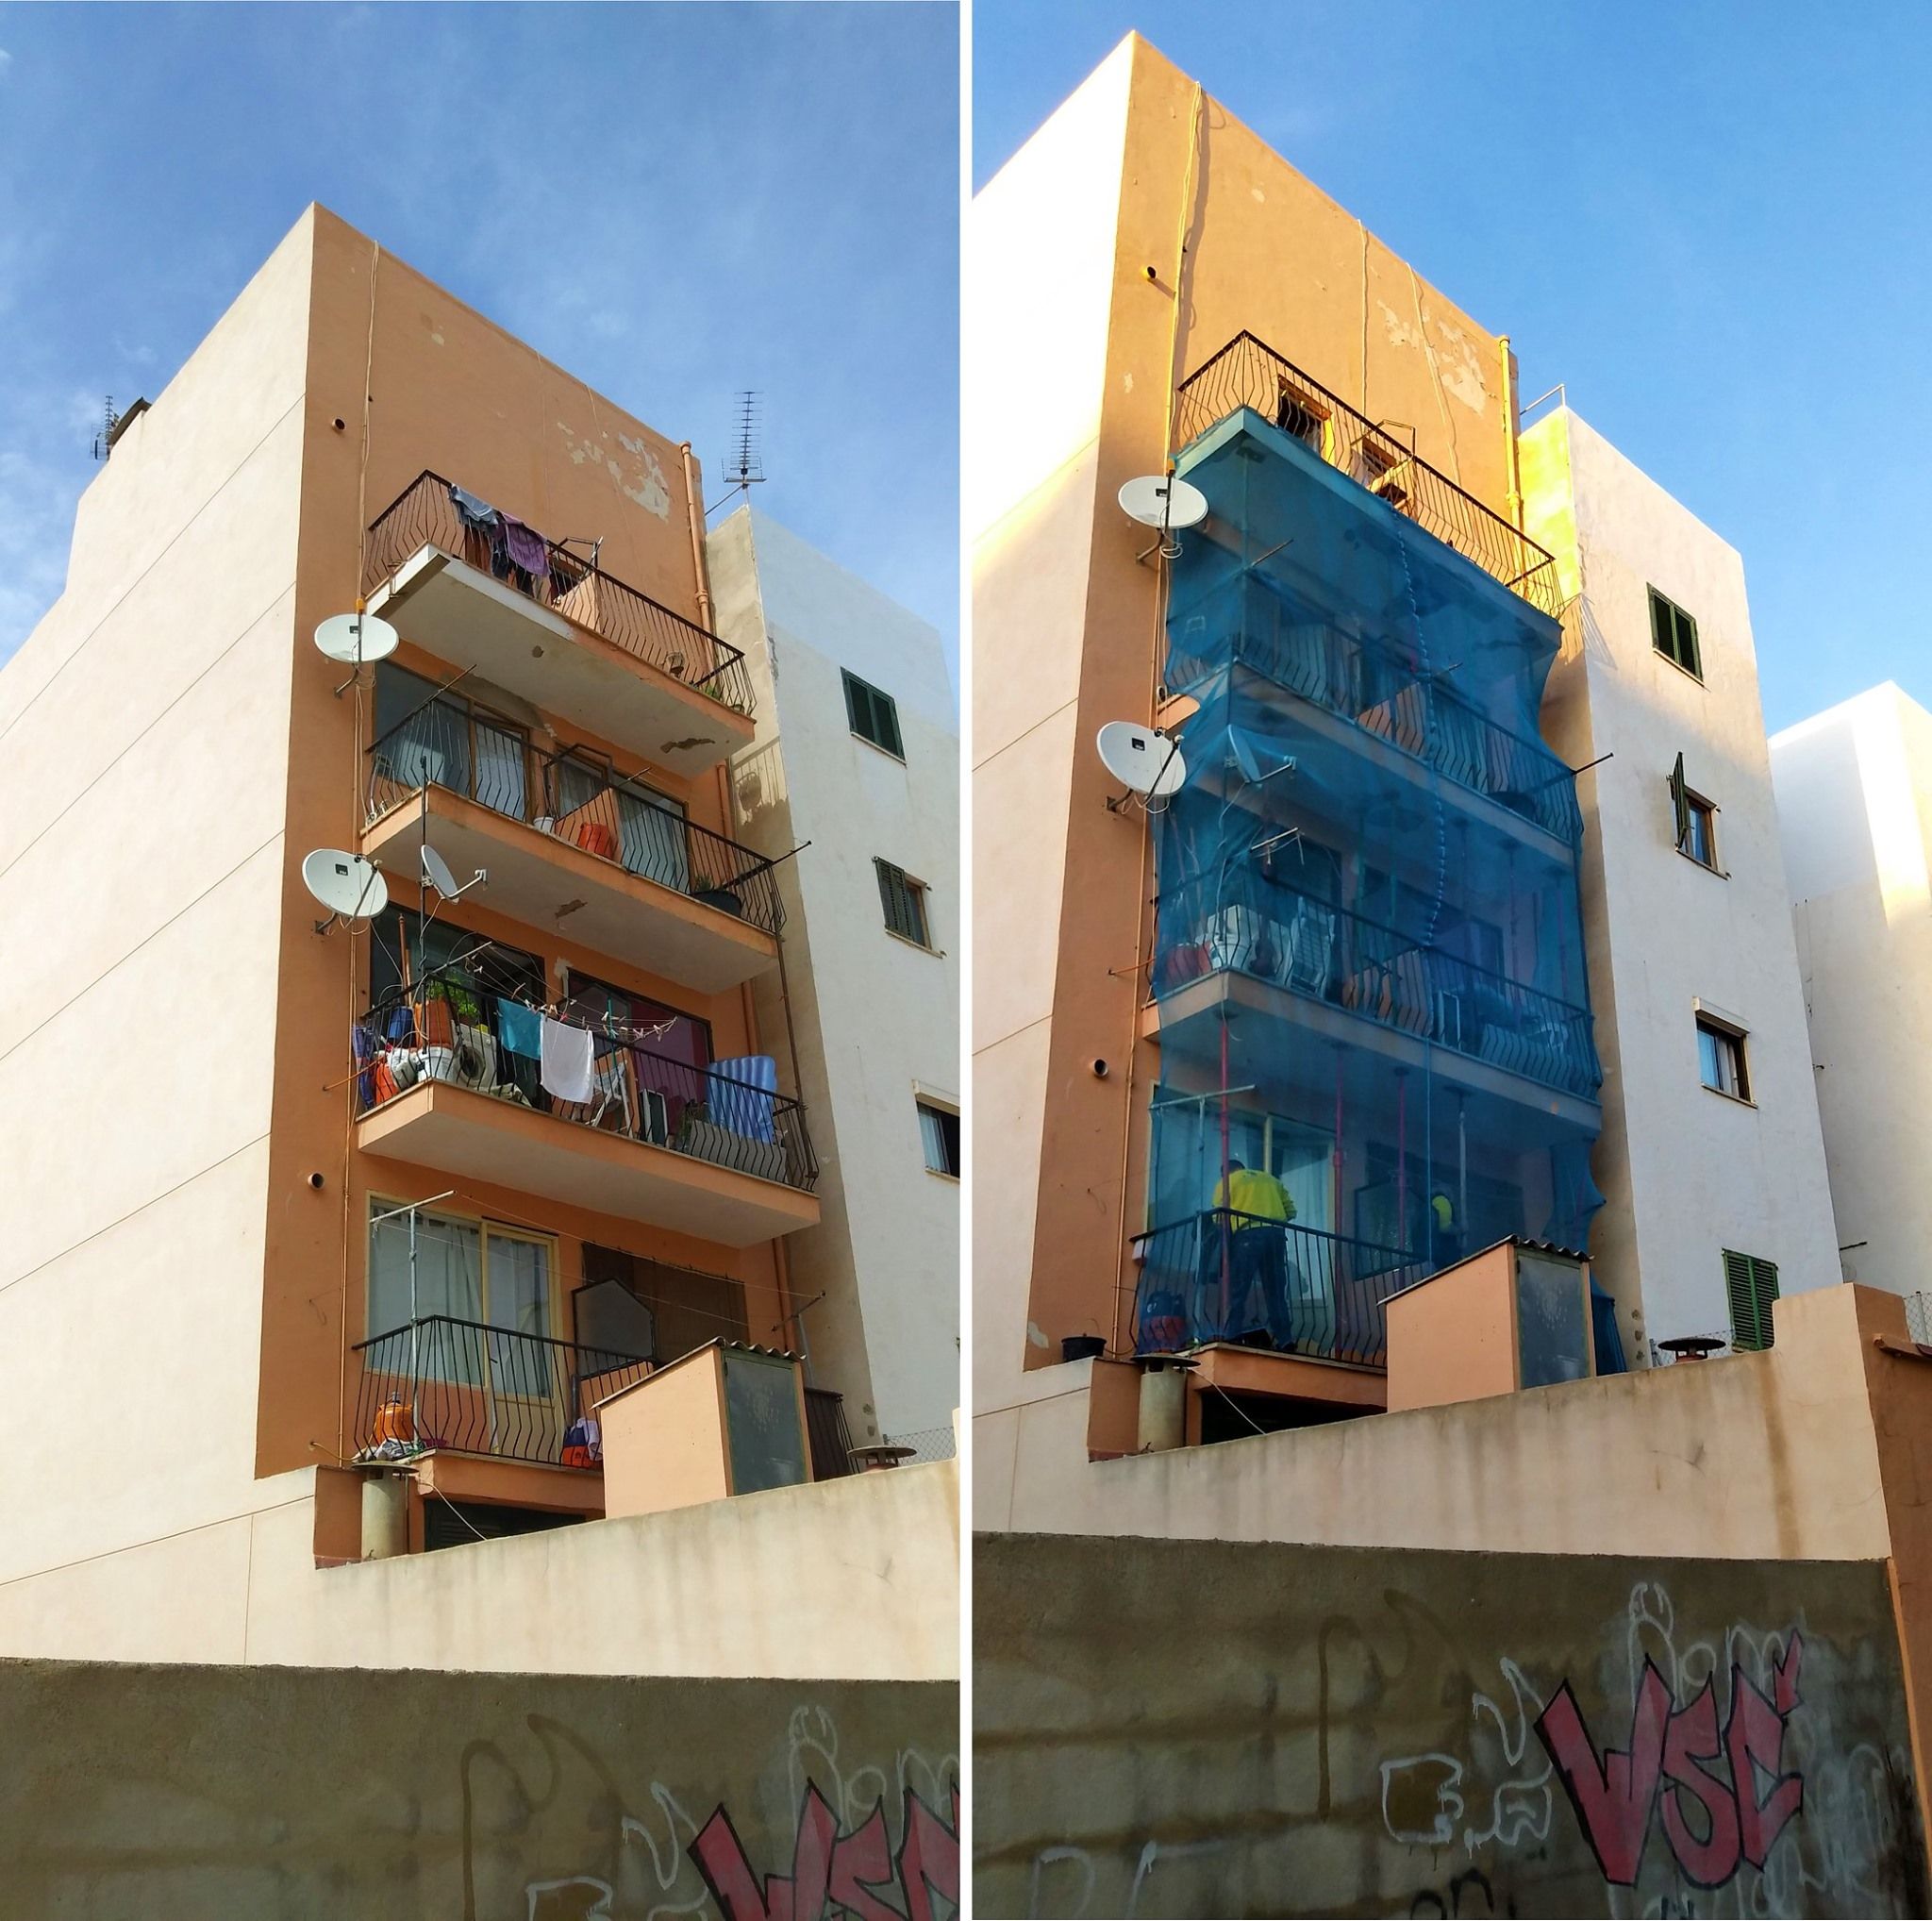 Foto 5 de Trabajos verticales en Palma de Mallorca | Trabajos Verticales Florinity